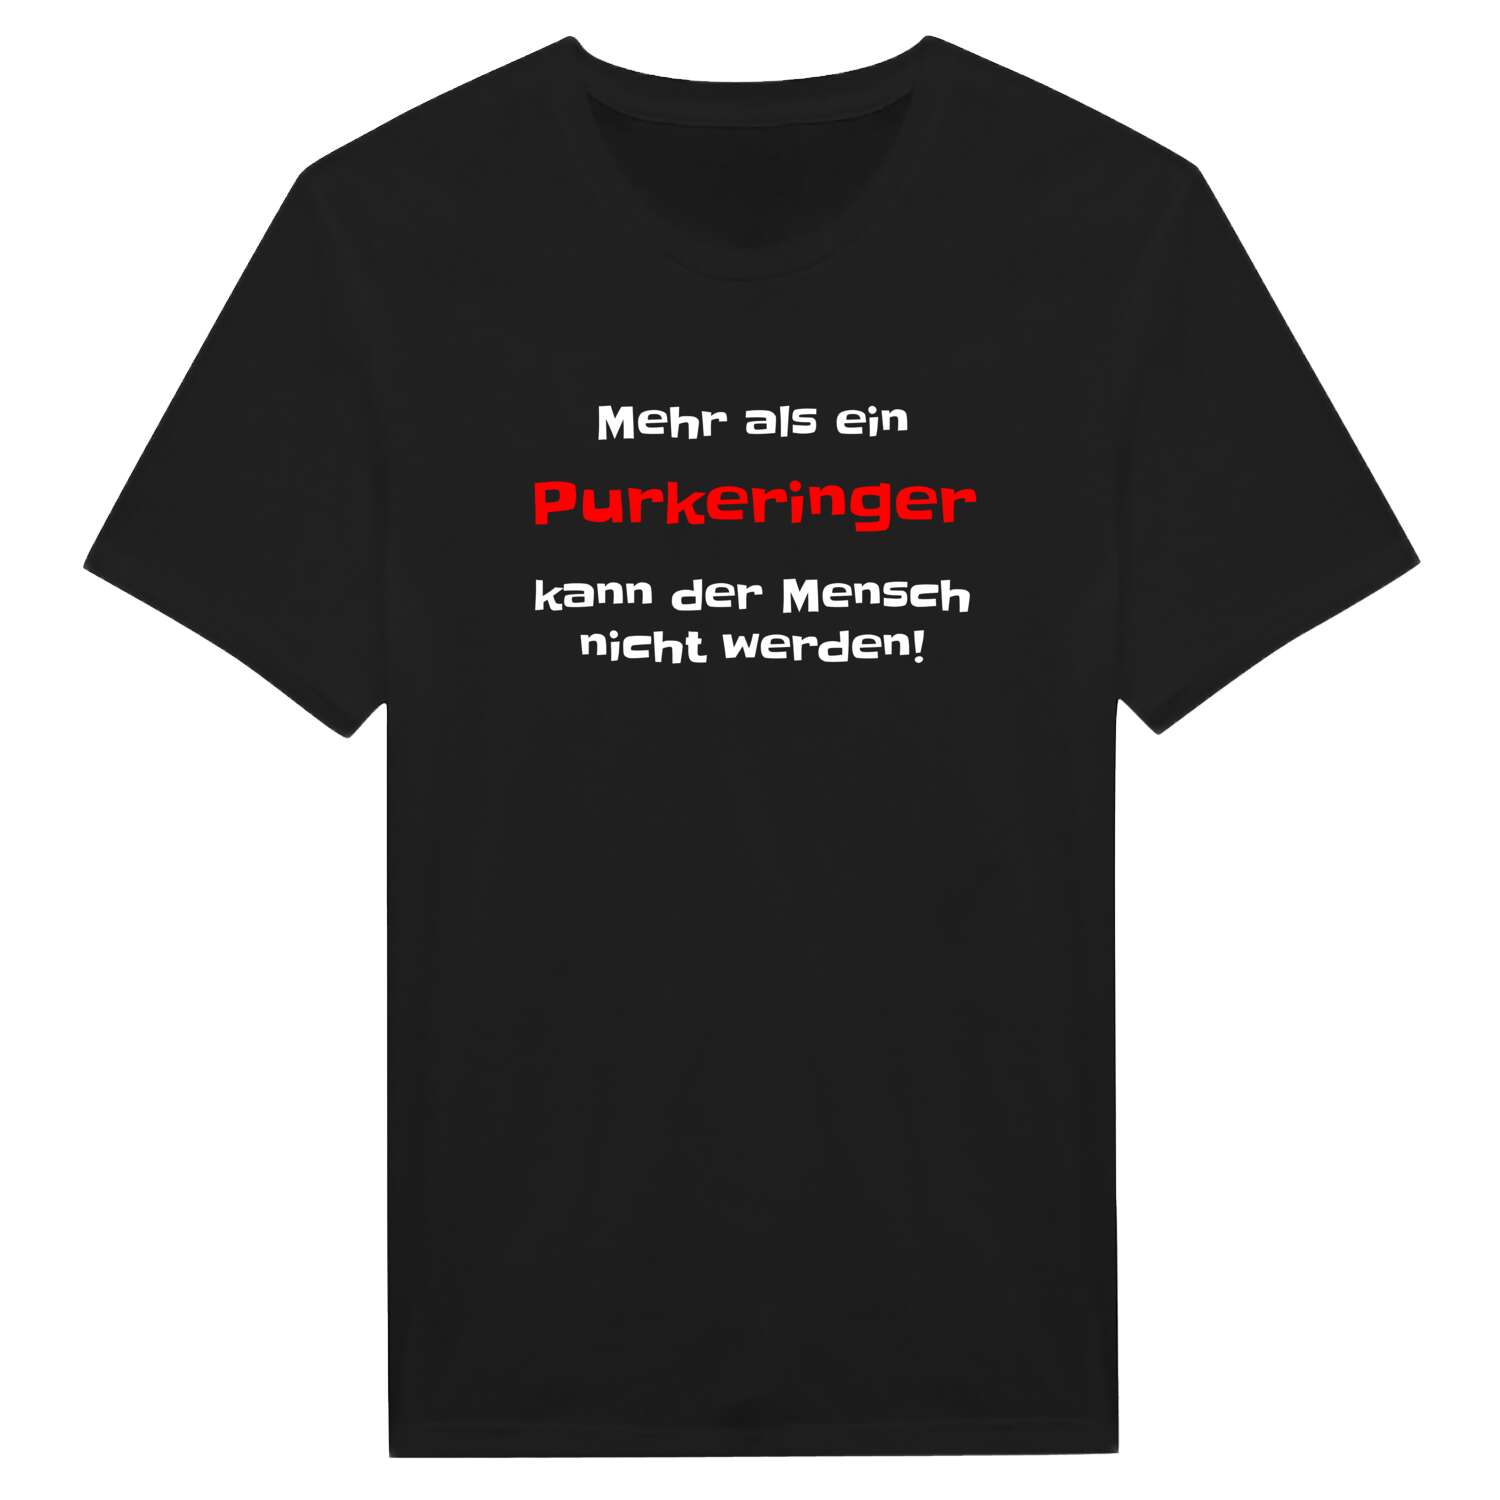 Purkering T-Shirt »Mehr als ein«